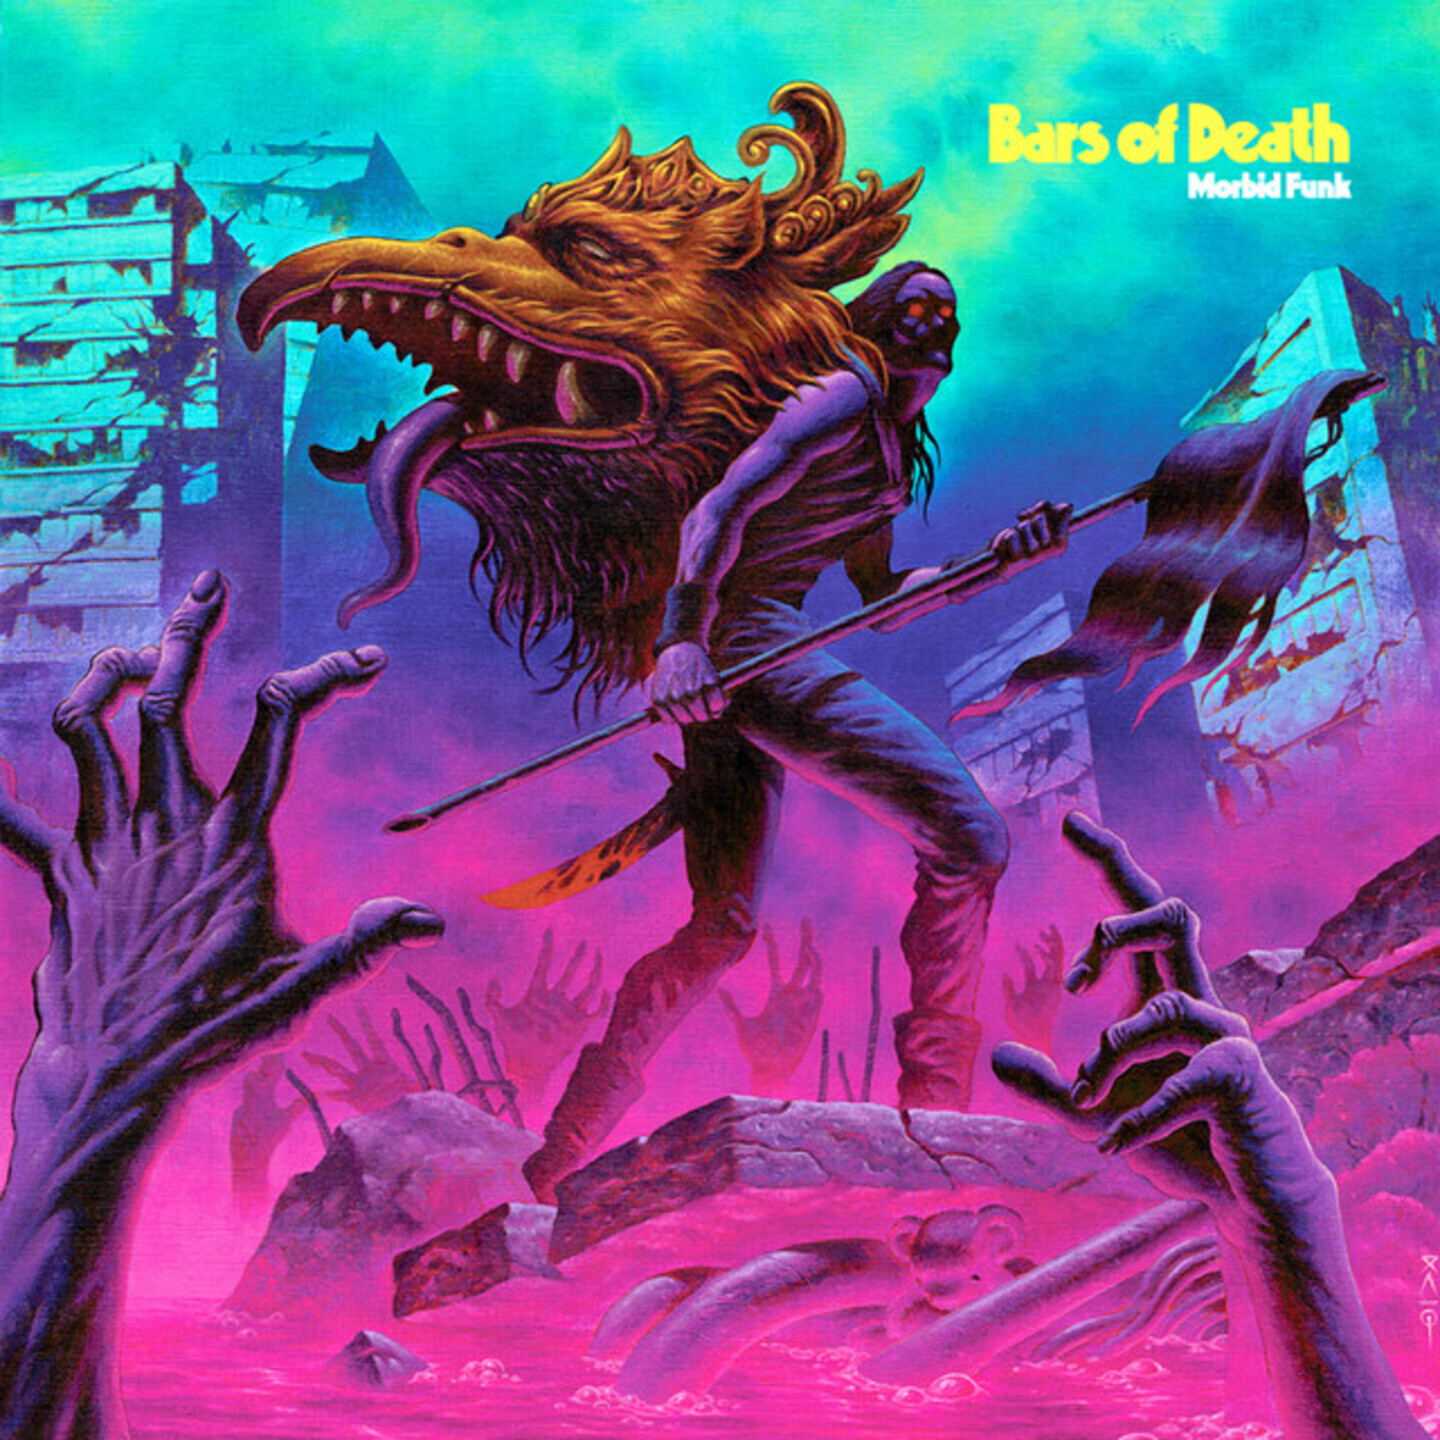 BARS OF DEATH - Morbid Funk LP